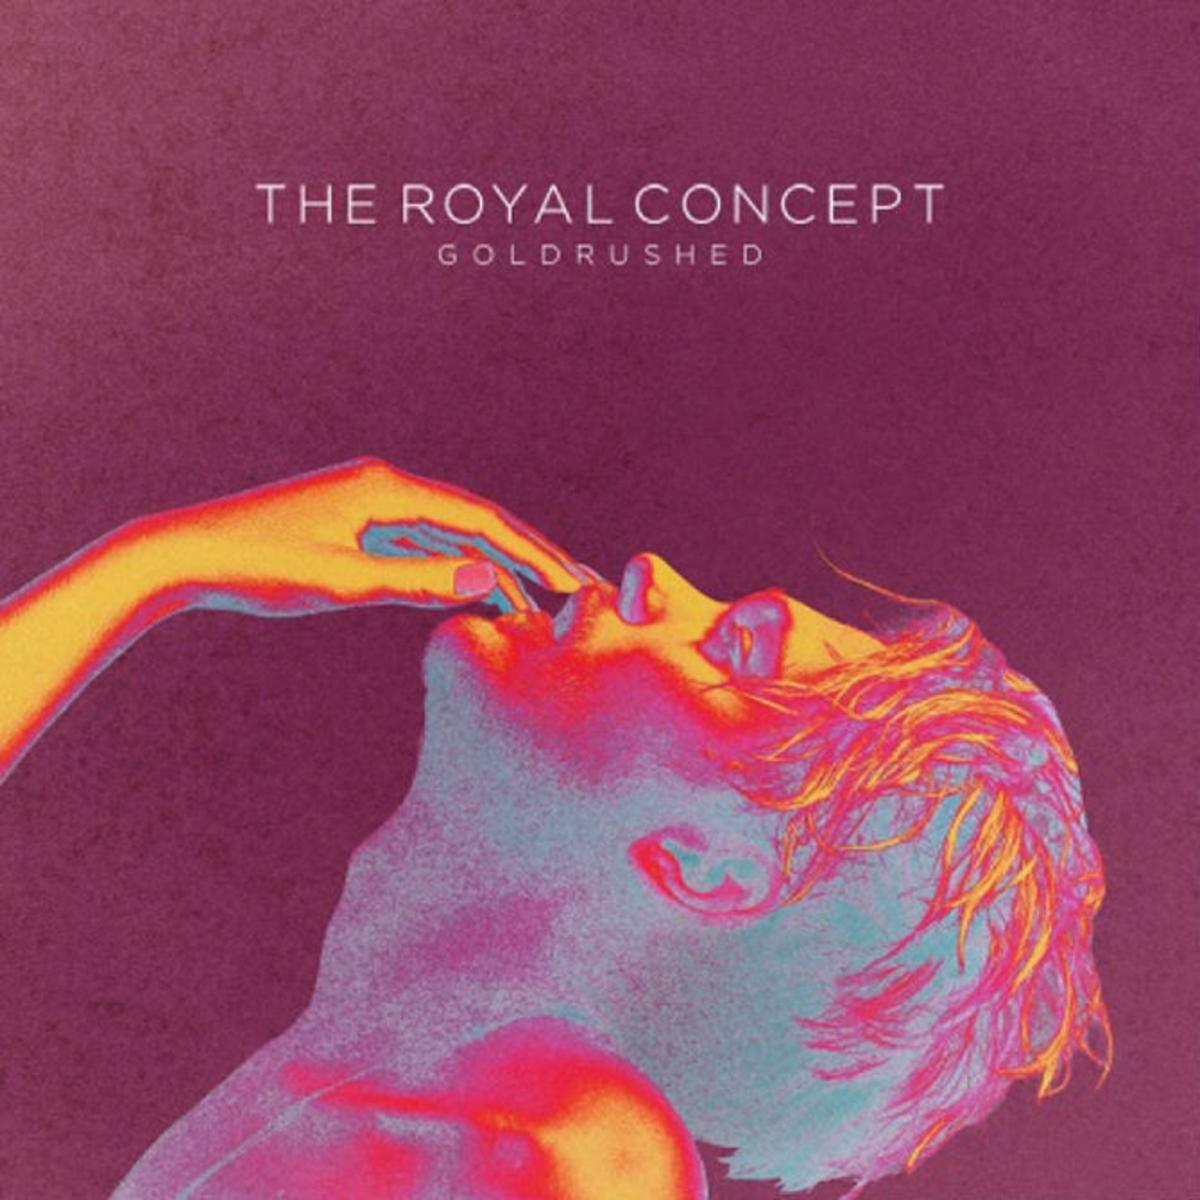 Omslagsbild för album från The royal concept